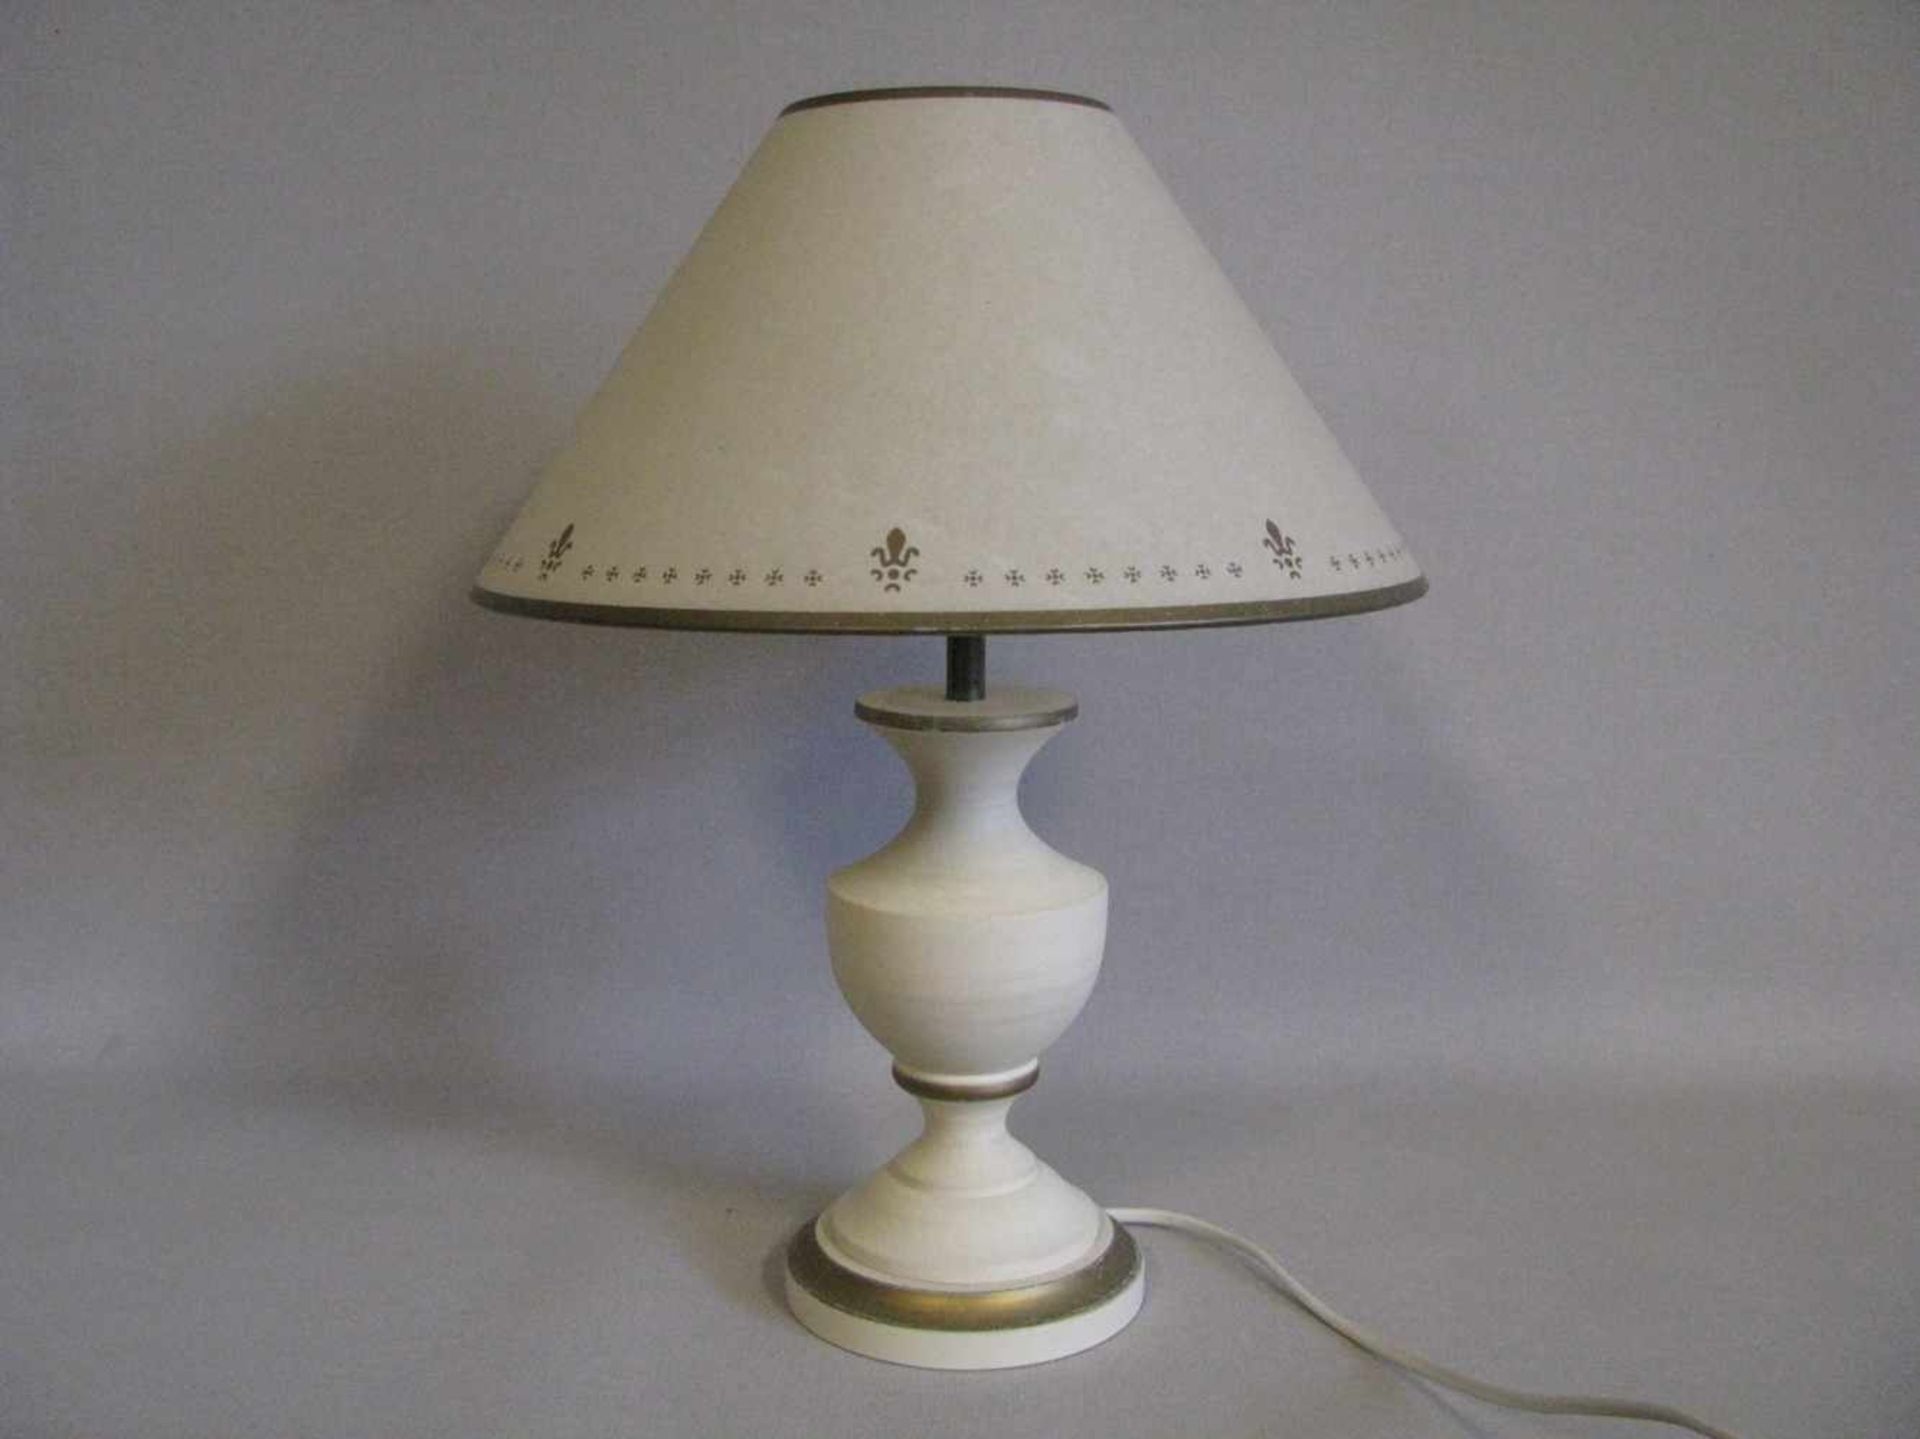 Tischlampe, Laura Ashley, crèmefarben gefasster Holzfuß, einflammig, gem., h 41 cm, d 31 cm.